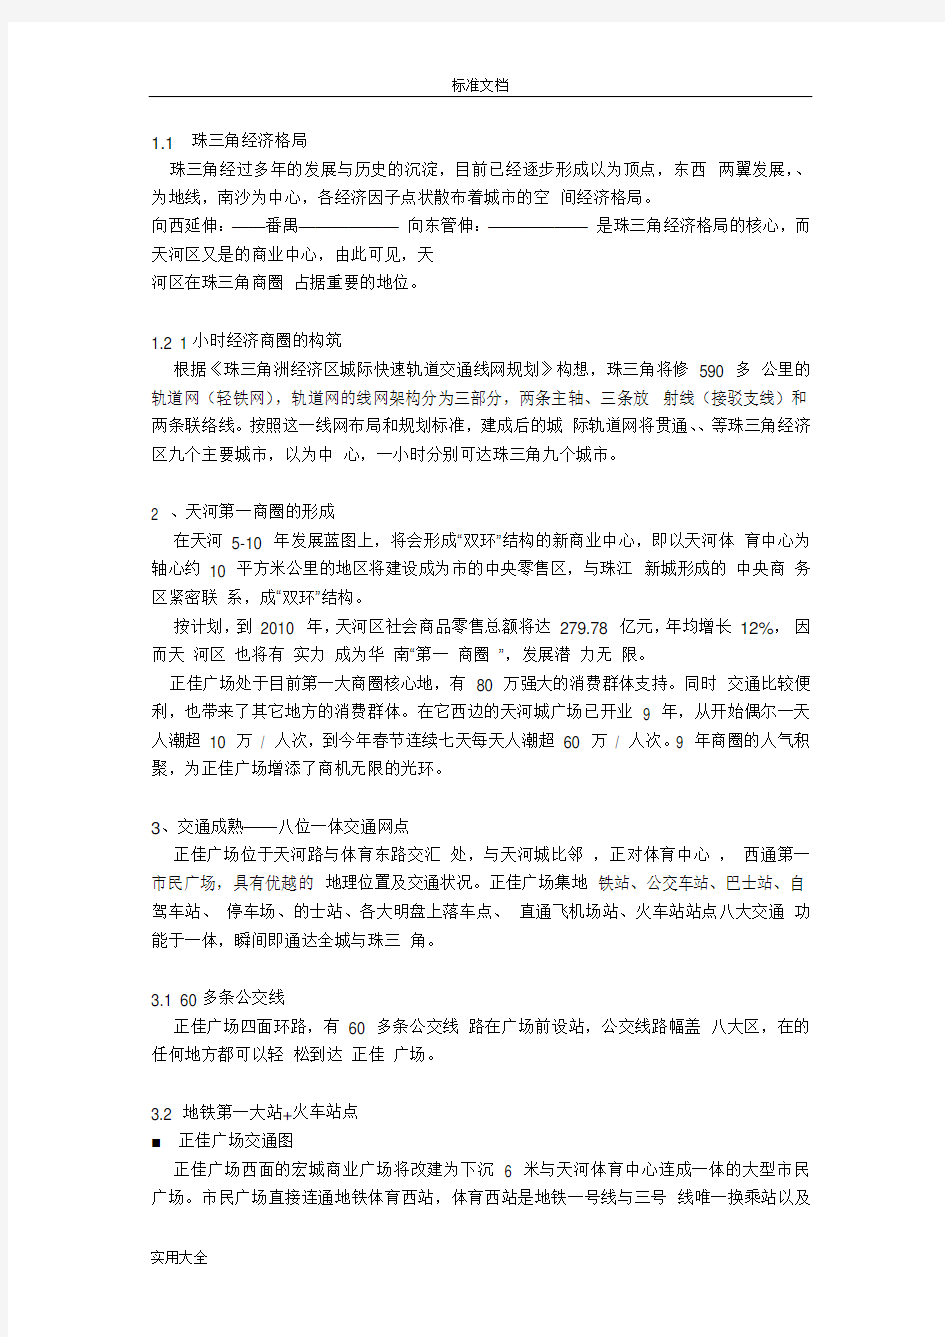 百强商业项目案例之二--广州正佳广场(13页)